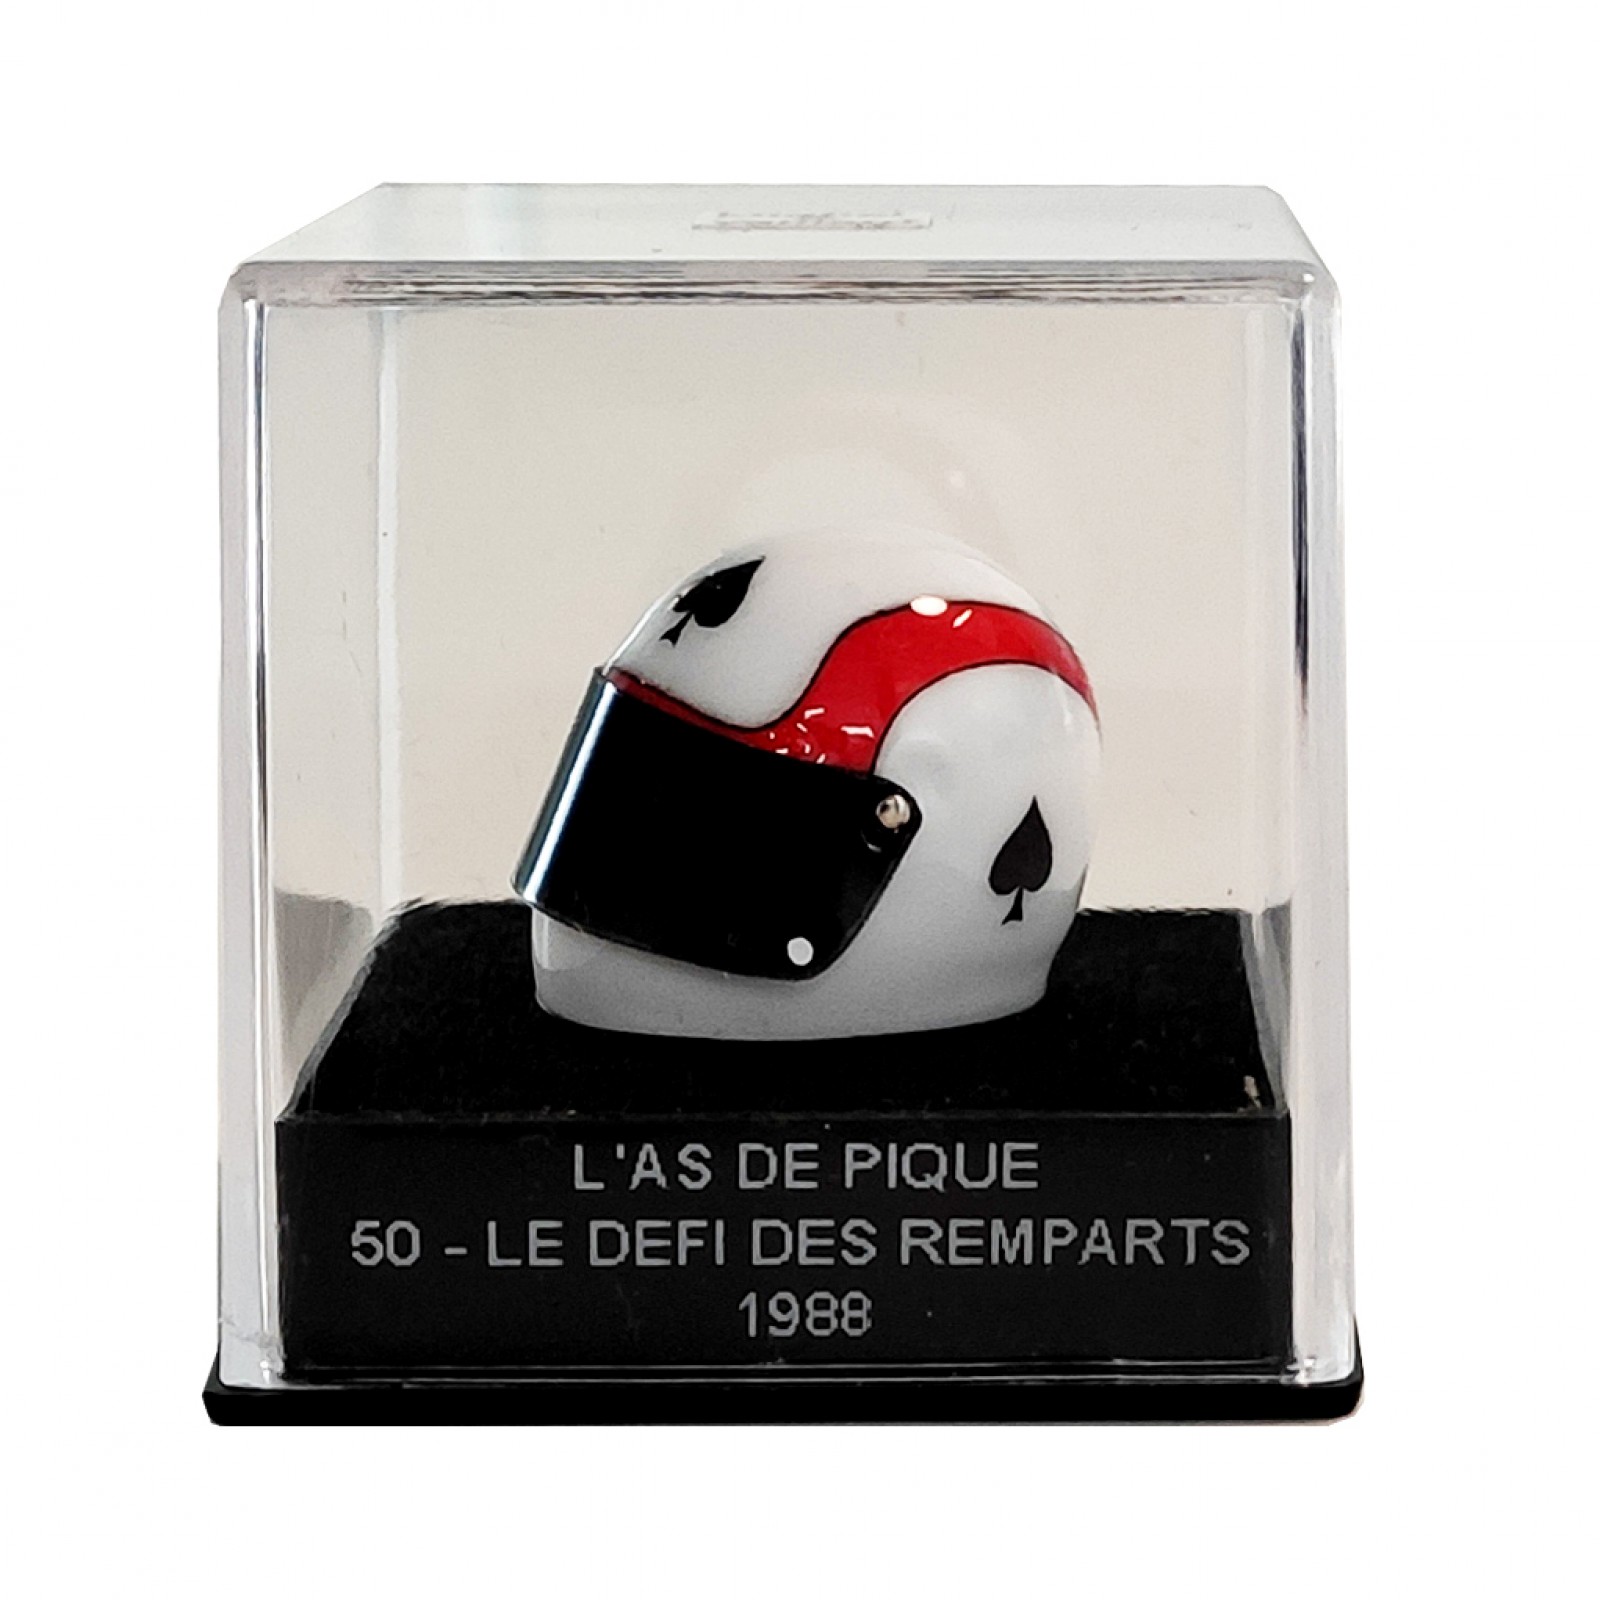 Mini helmet Michel Vaillant L'As de Pique 50 - Figurines